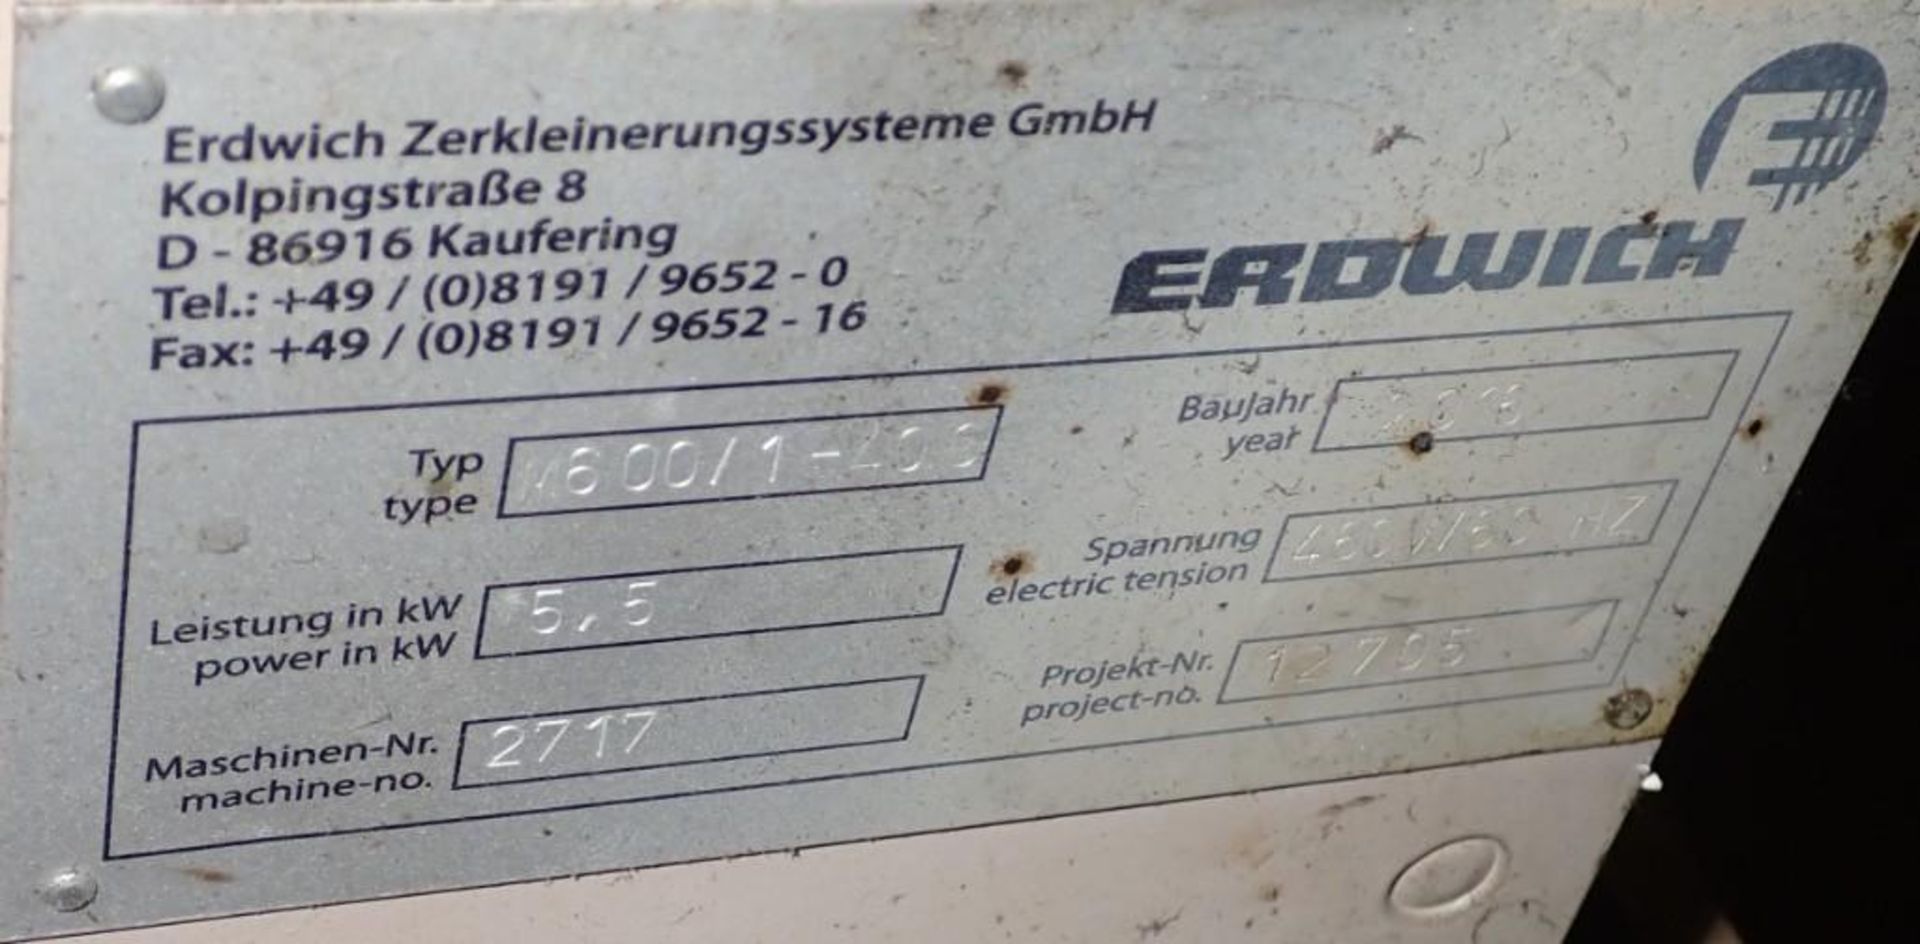 Erdwich #M600/1-400 Shredder - Image 6 of 7